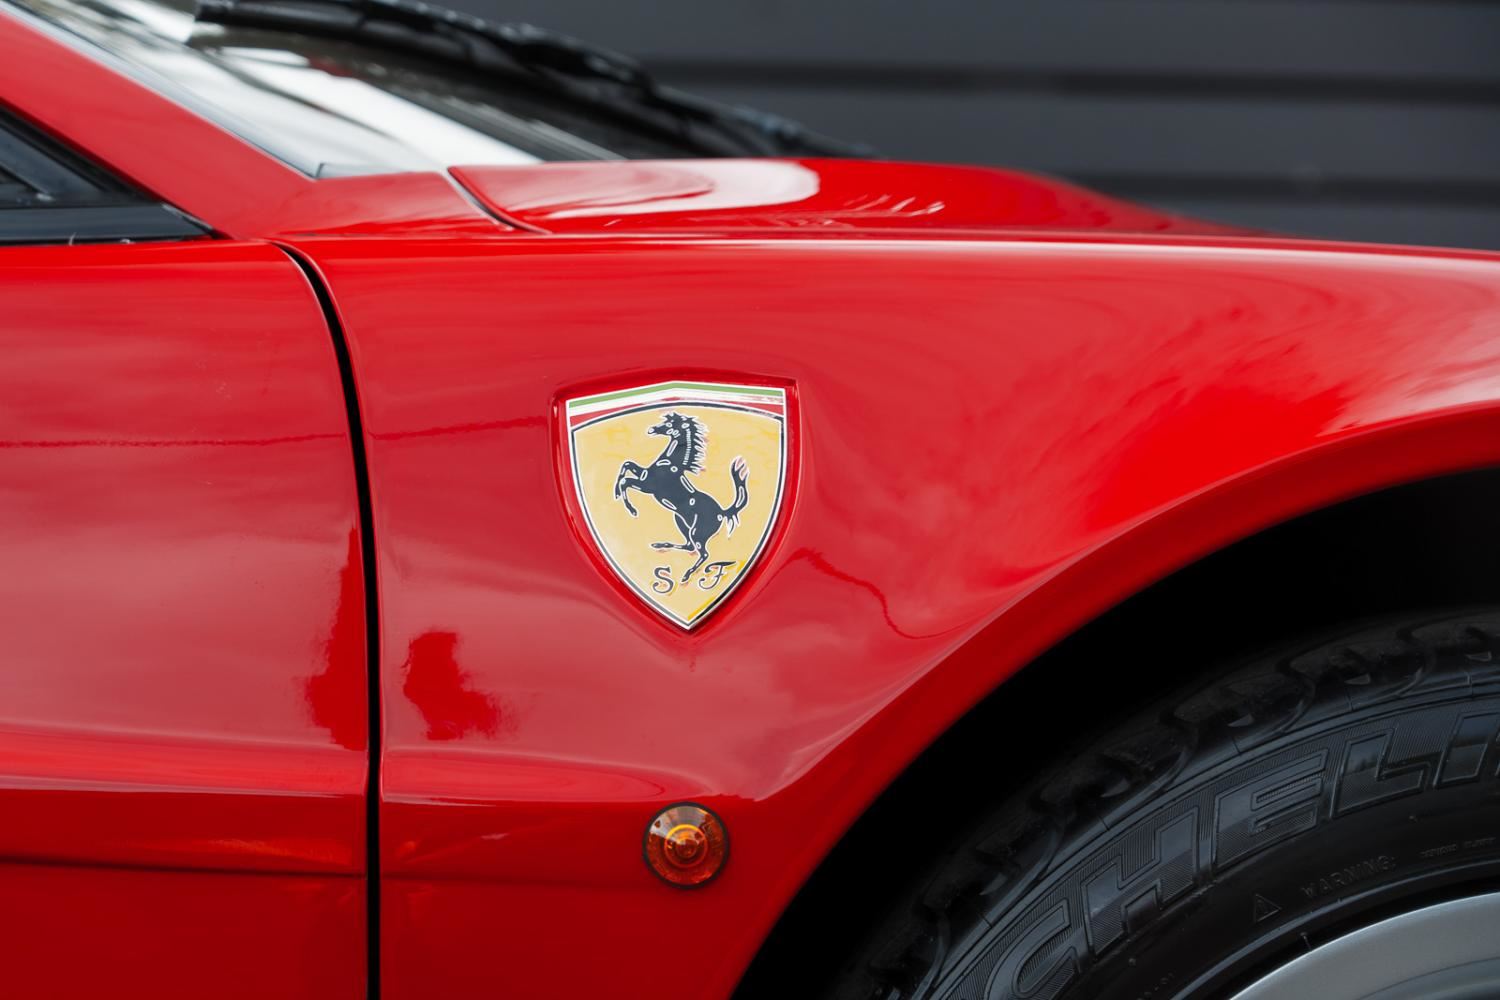 Ferrari testarossa i1rhpvovelol6jcll1exv